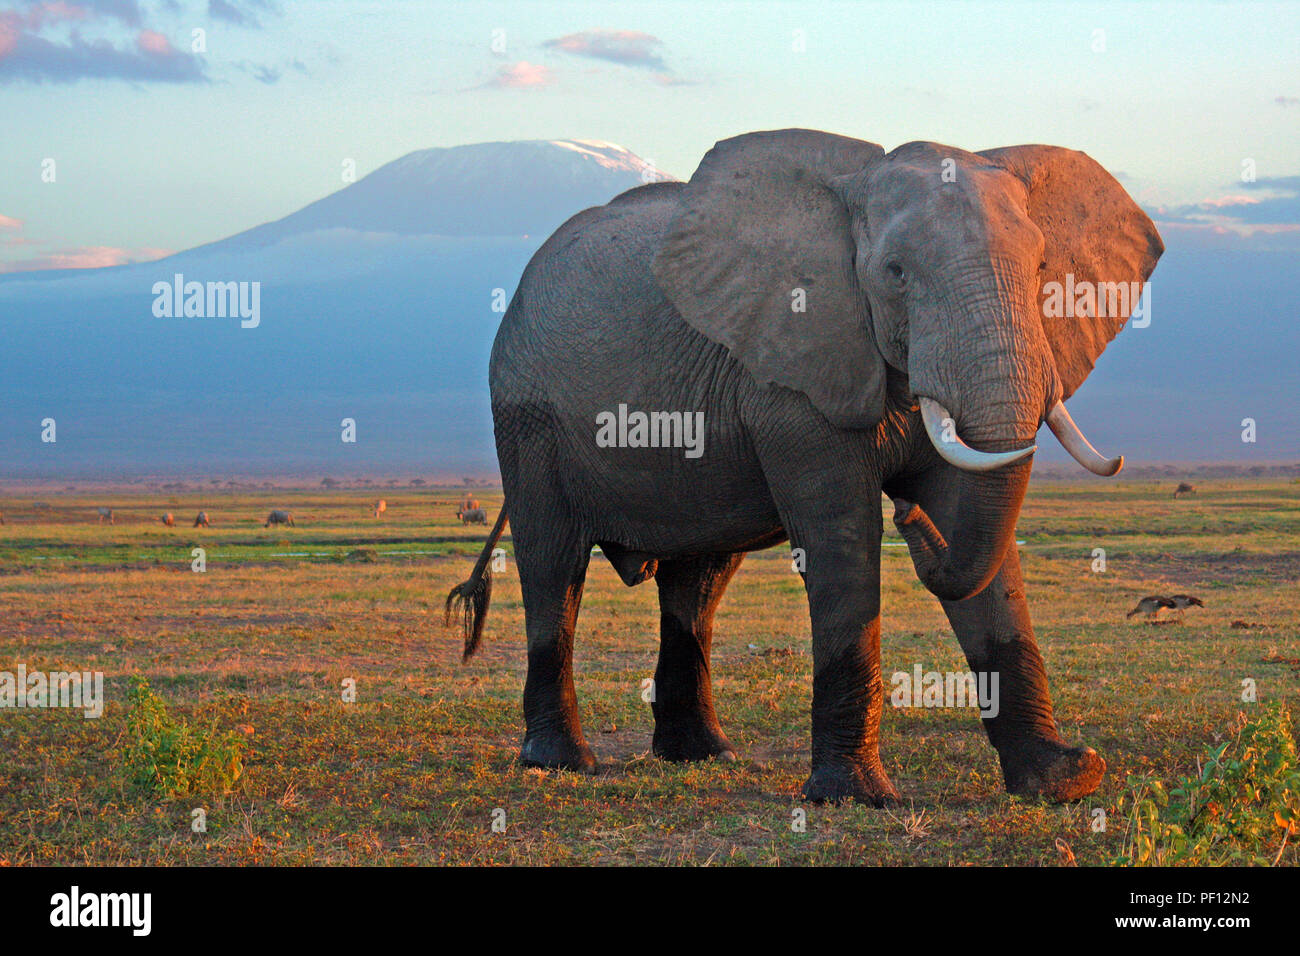 African bush elephant or African elephant (Loxodonta africana) at Mount Kilimanjaro, Amboseli Stock Photo